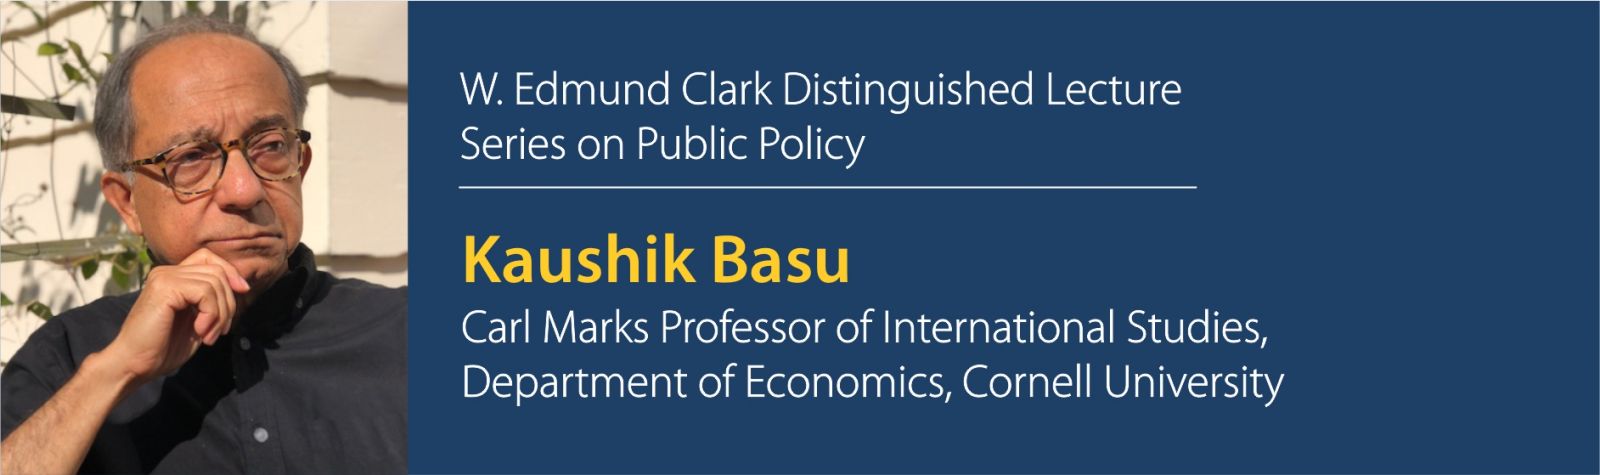 Kaushik Basu Lecture Banner